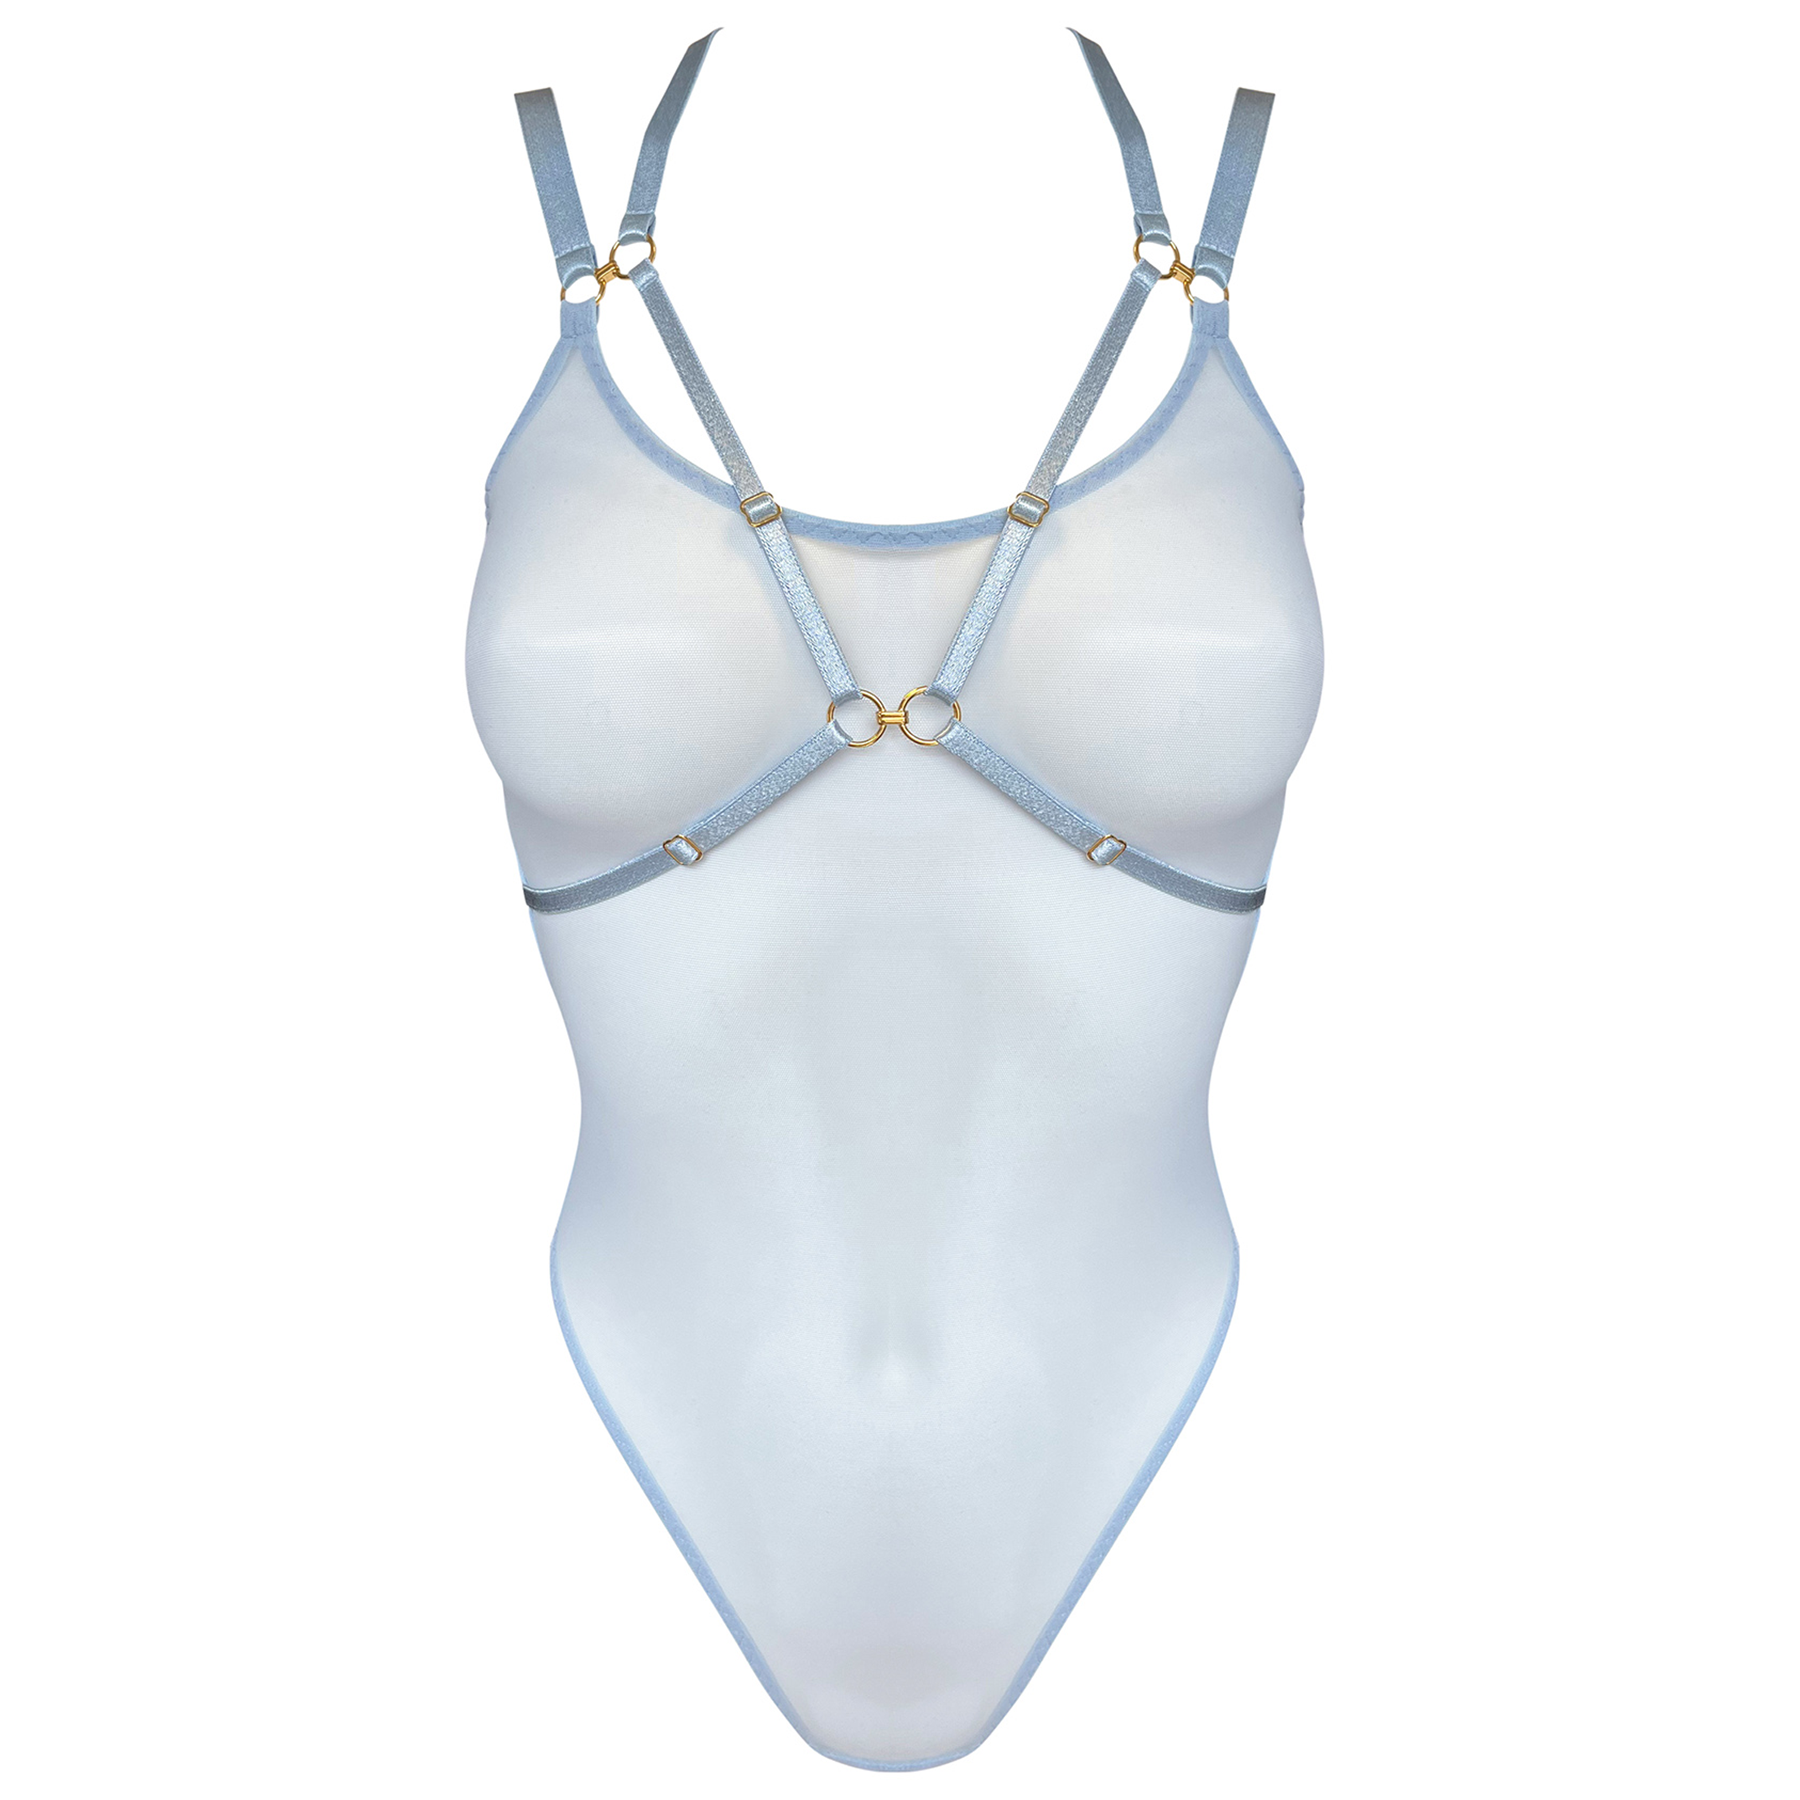 Vero harness body by Bordelle - dusty blue